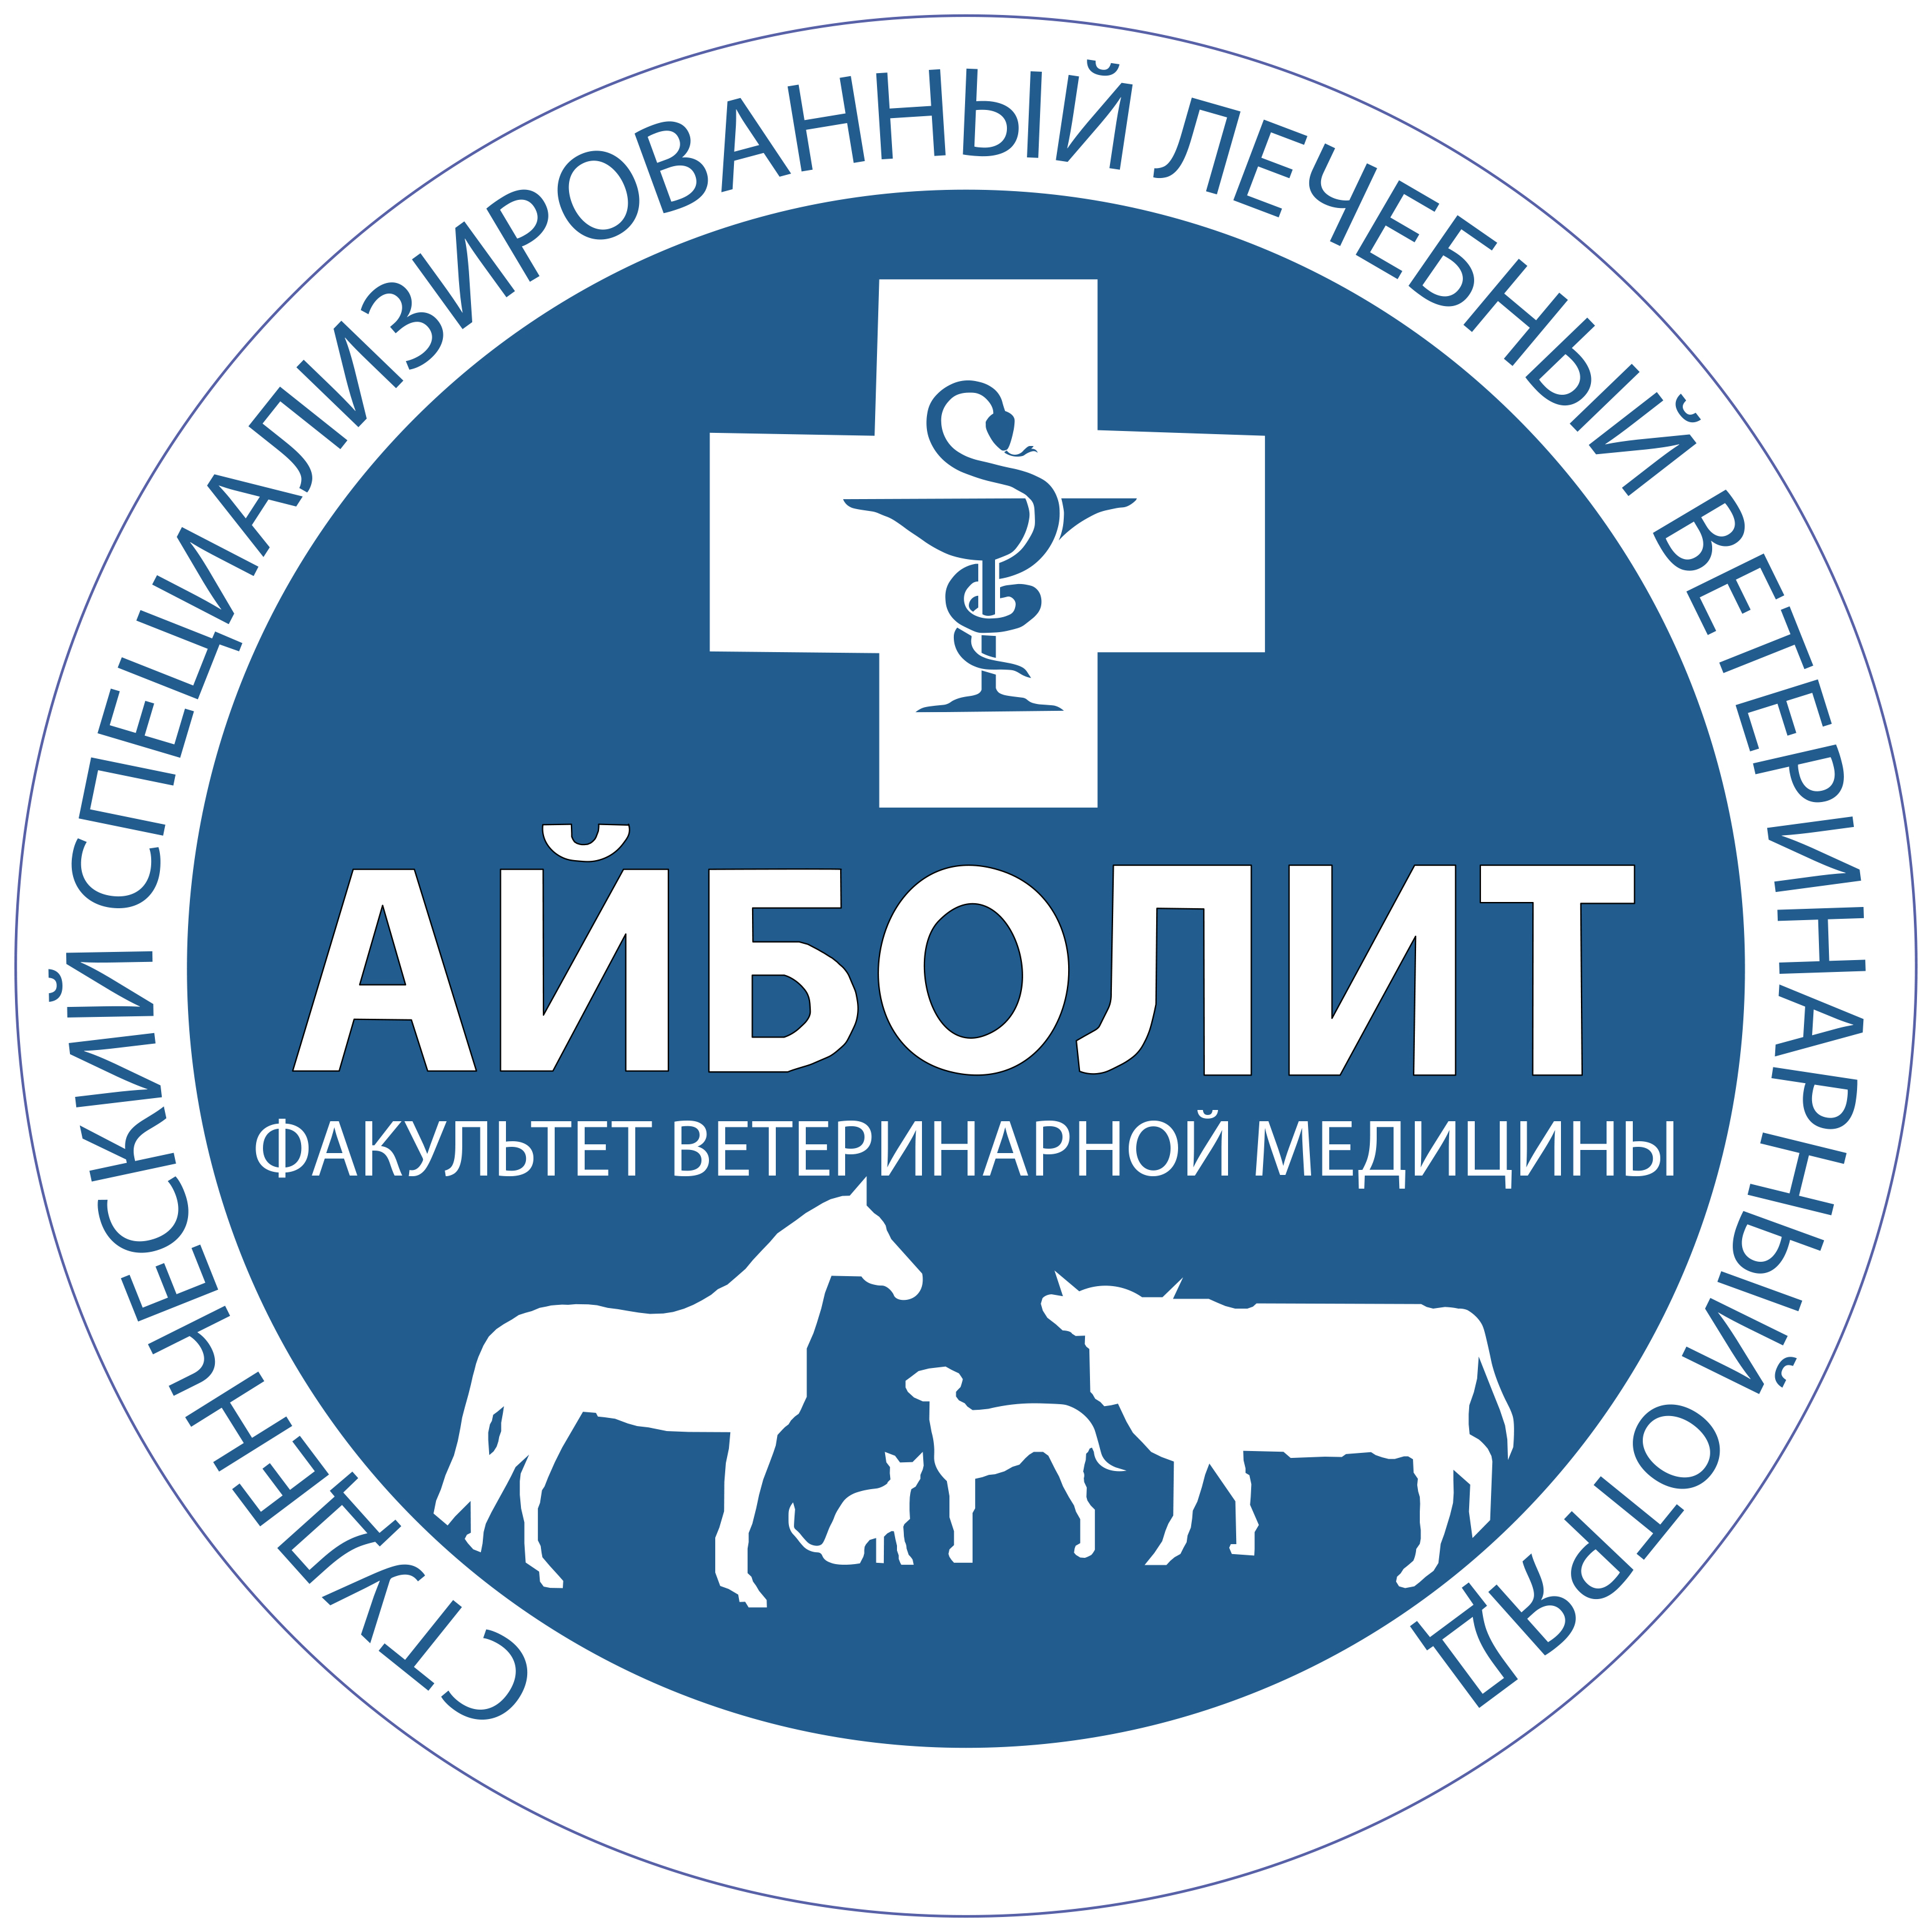 Ветеринарная служба учреждение. Ветеринария лого. Символ ветеринарии. Эмблема ветеринарной службы. Ветеринарная медицина логотип.